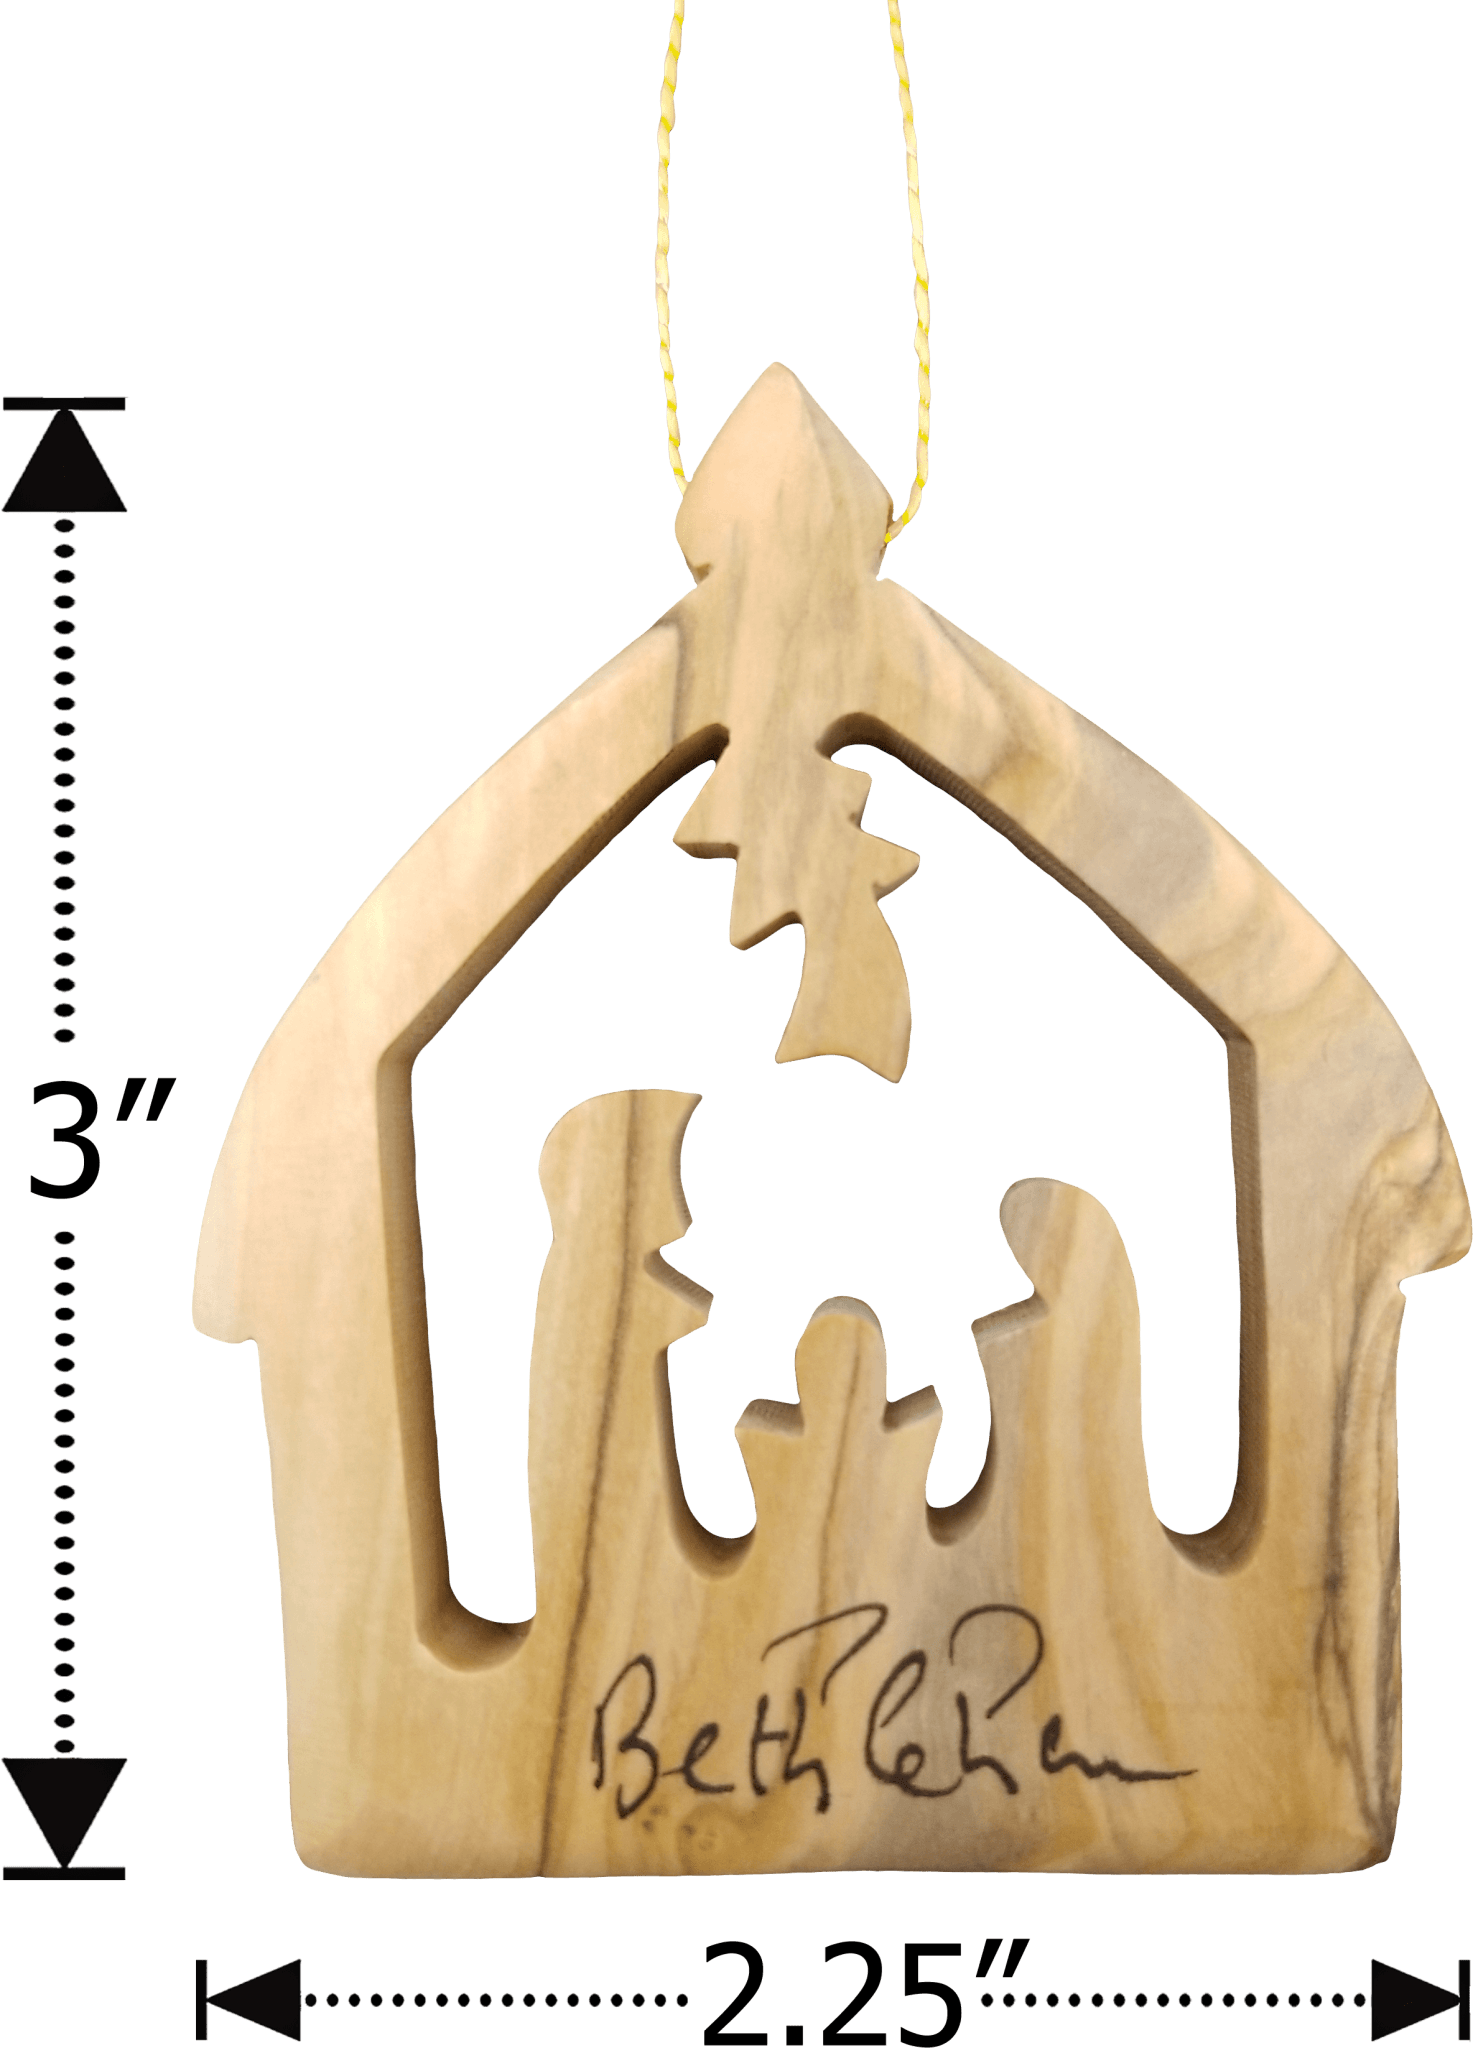 Olive Wood Bethlehem Nativity 3" Ornament